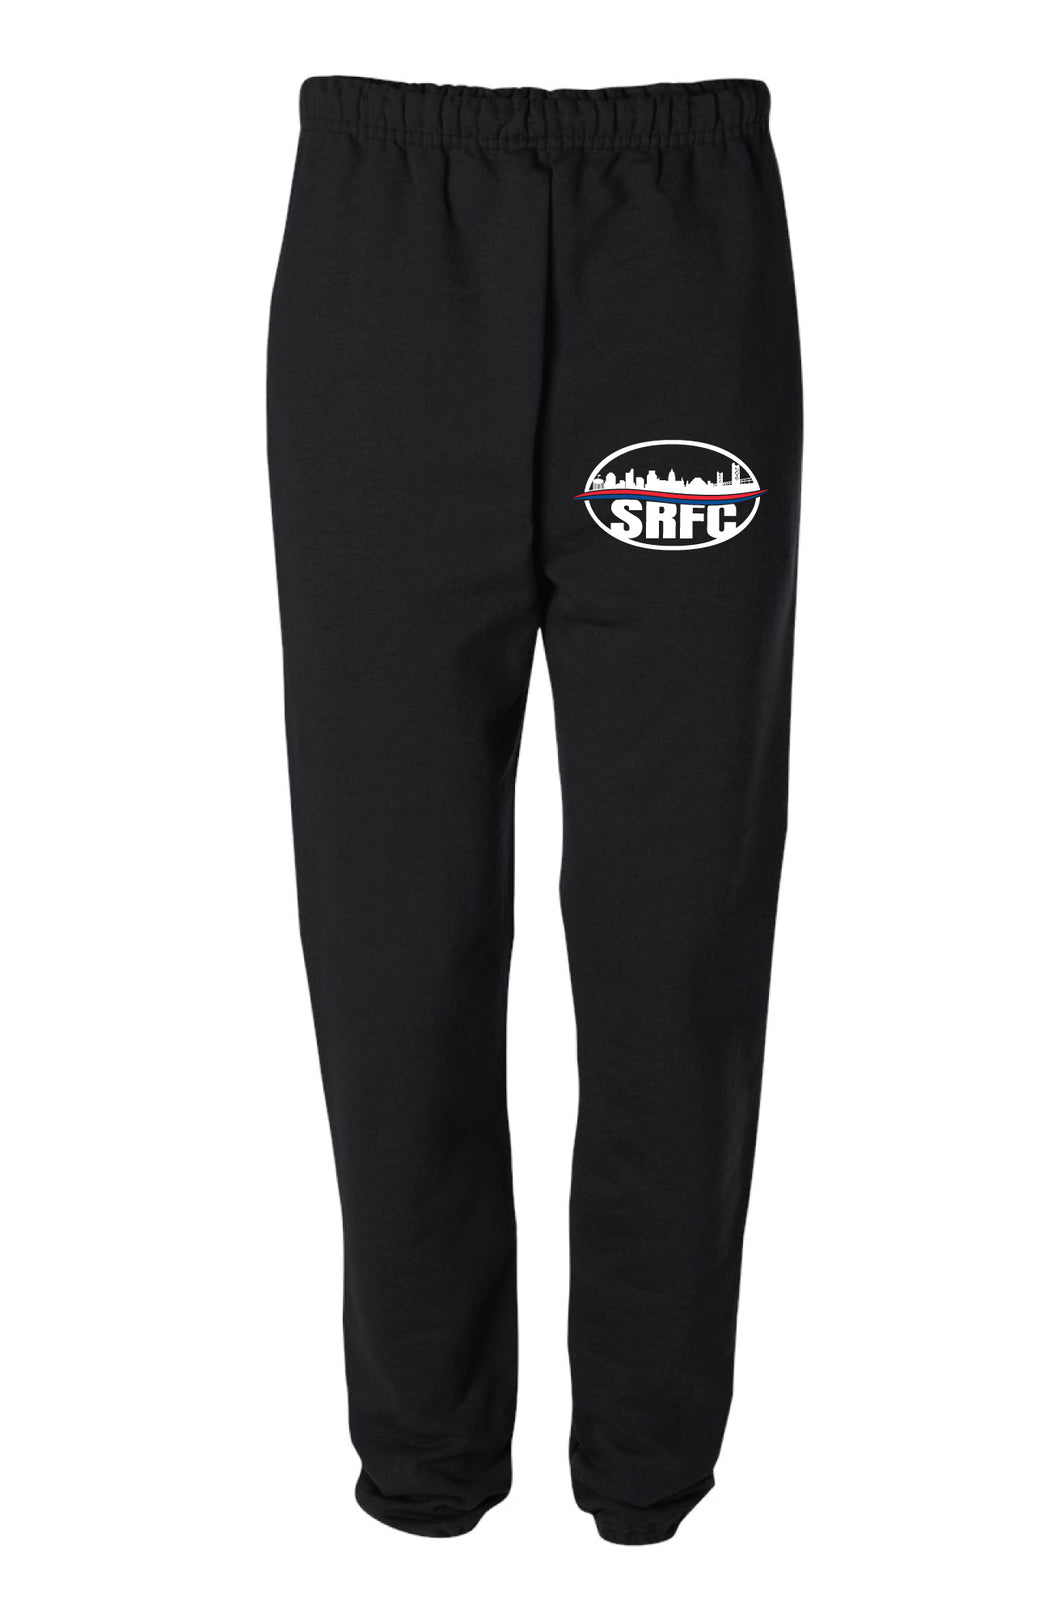 SRFC Cotton Sweatpants - Black - 5KounT